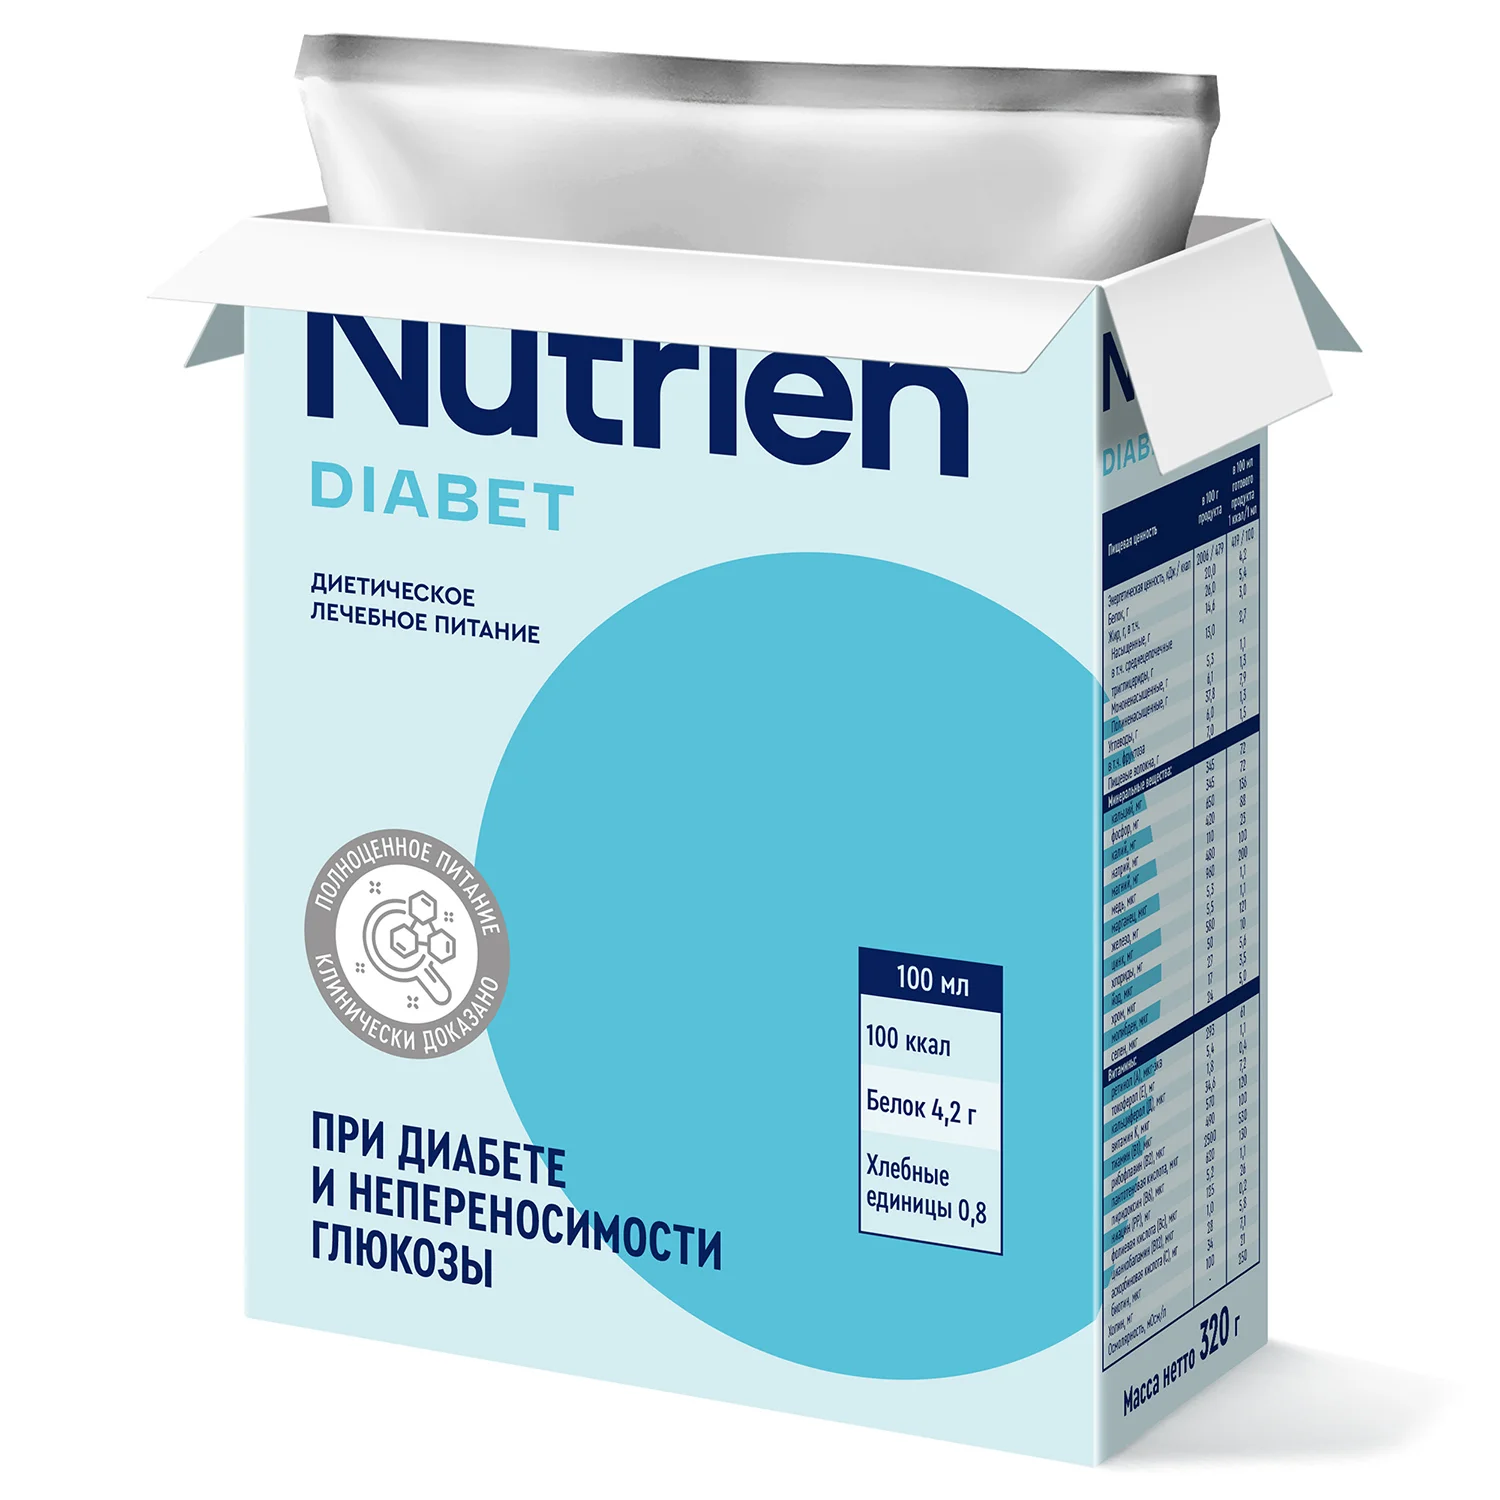 Nutrien Diabet - 7